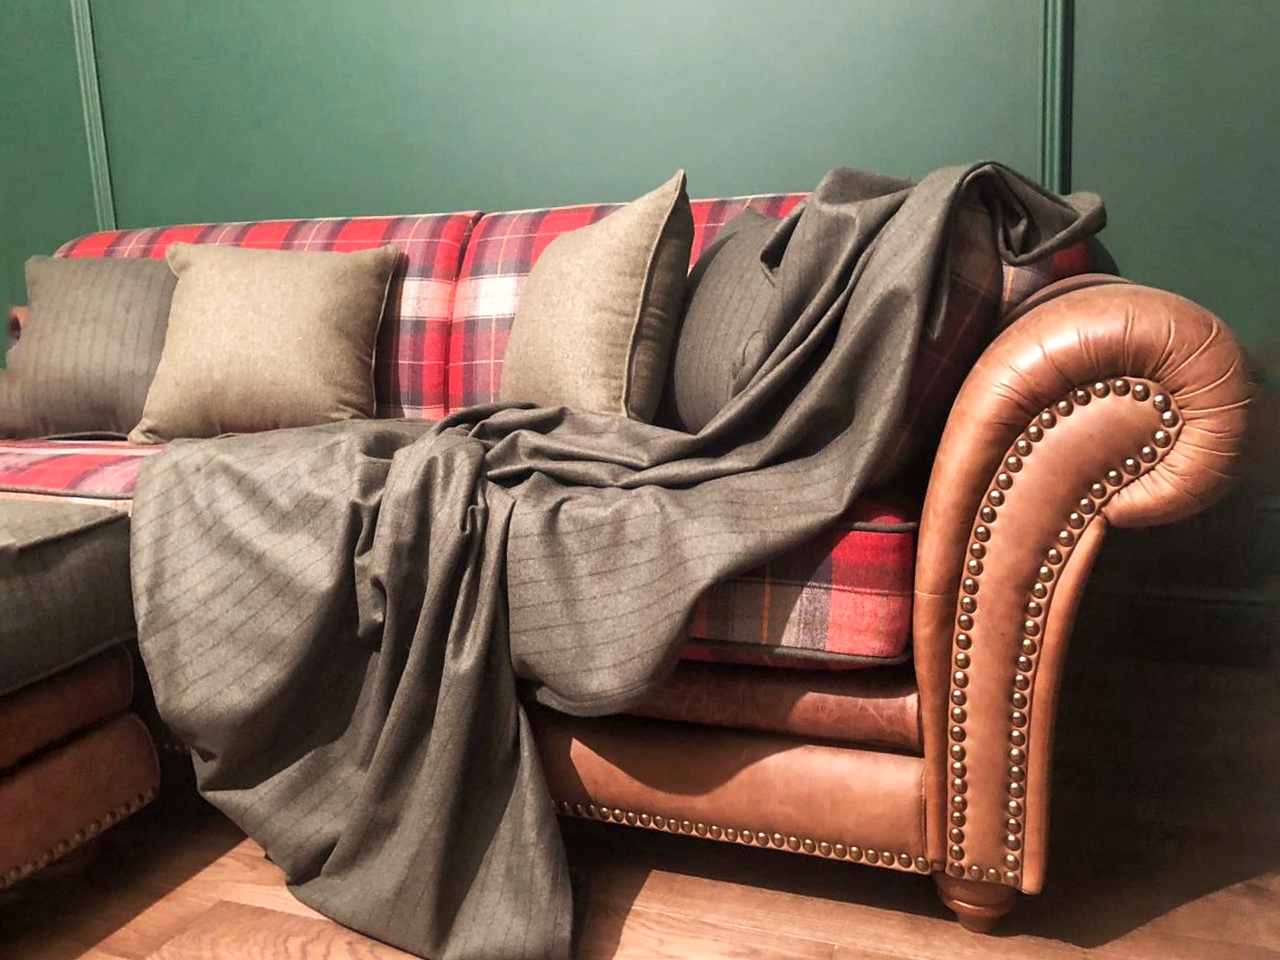 Шотландская клетка на диване 